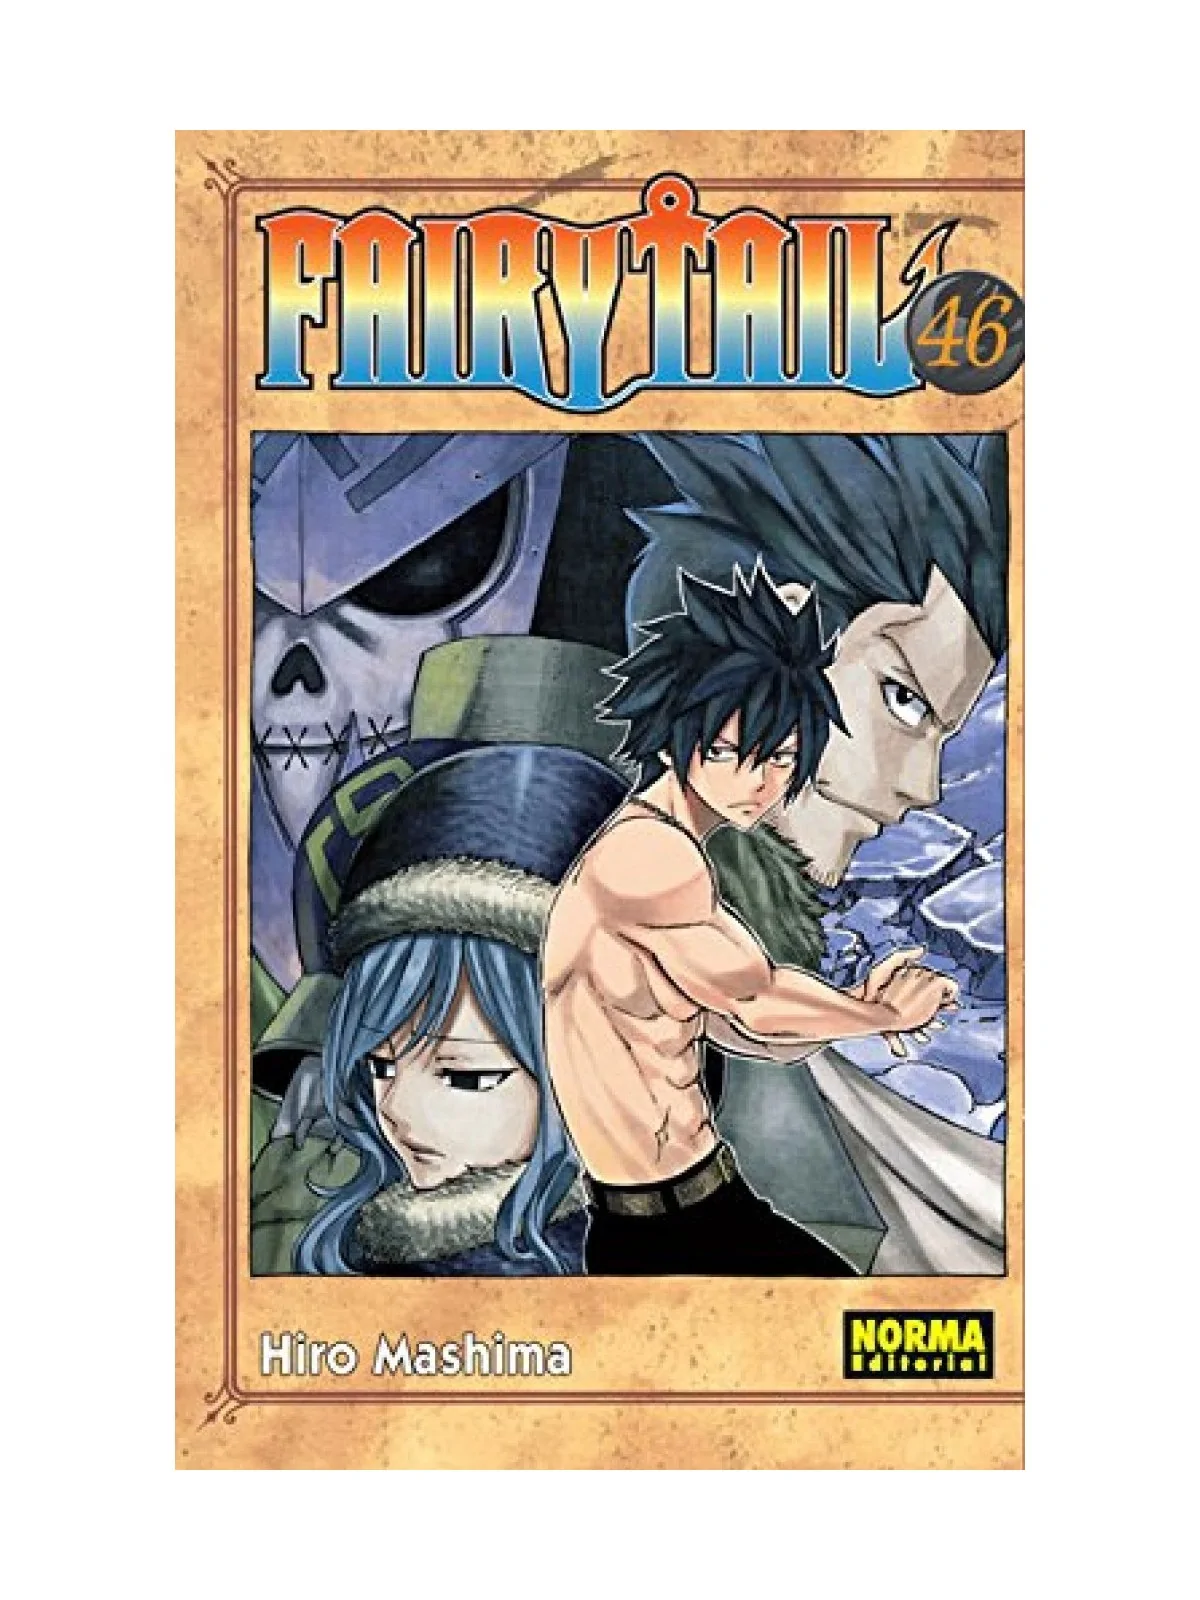 Comprar Fairy Tail barato al mejor precio 7,12 € de Norma Editorial